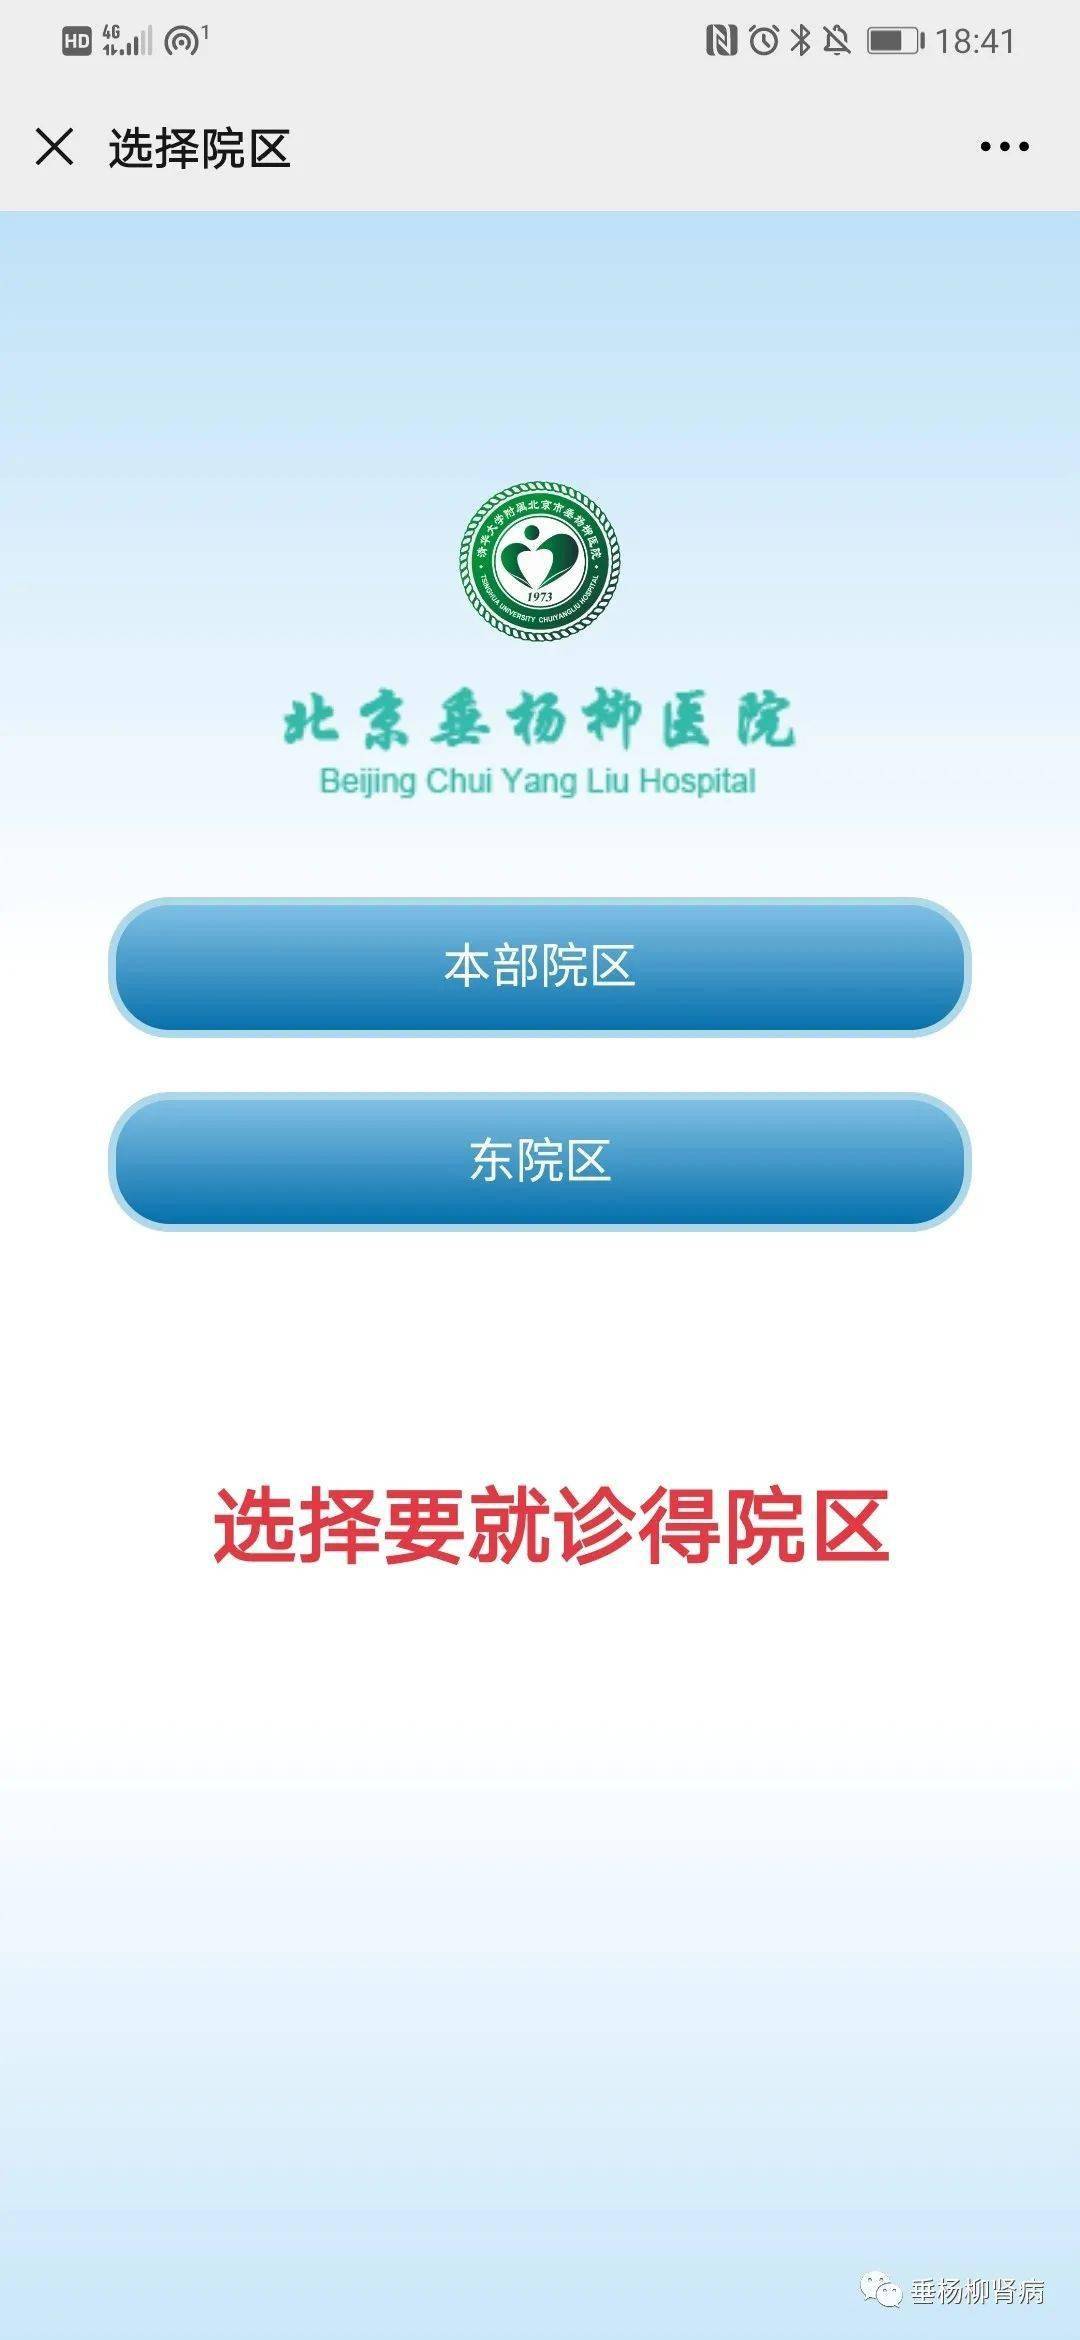 包含北京电力医院号贩子办提前办理挂号住院联系方式专业快速的词条